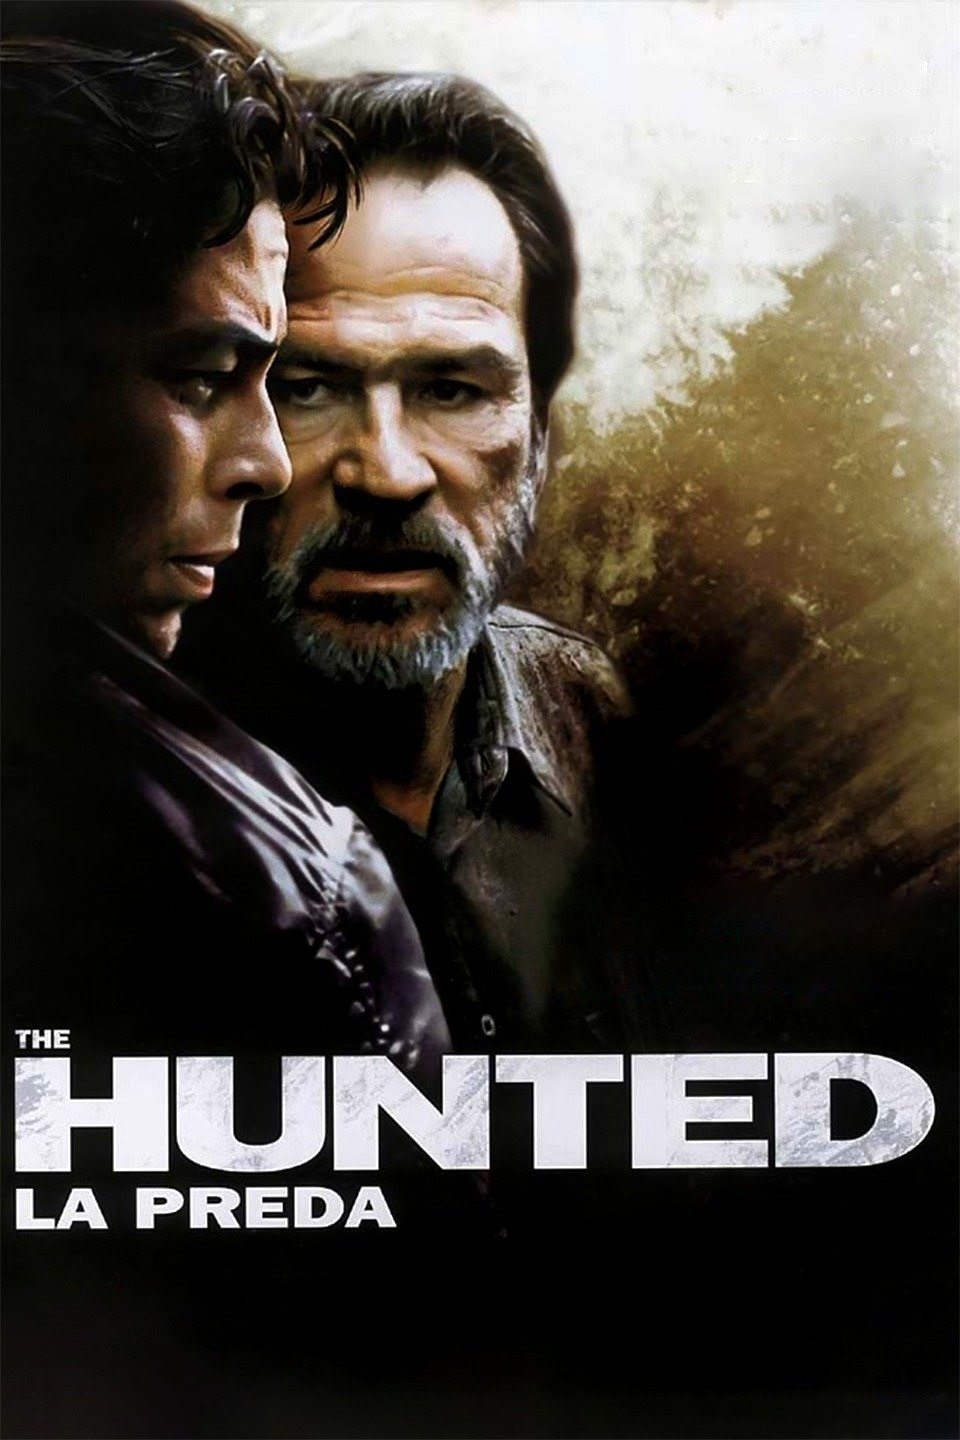 The Hunted – La preda [HD] (2003)